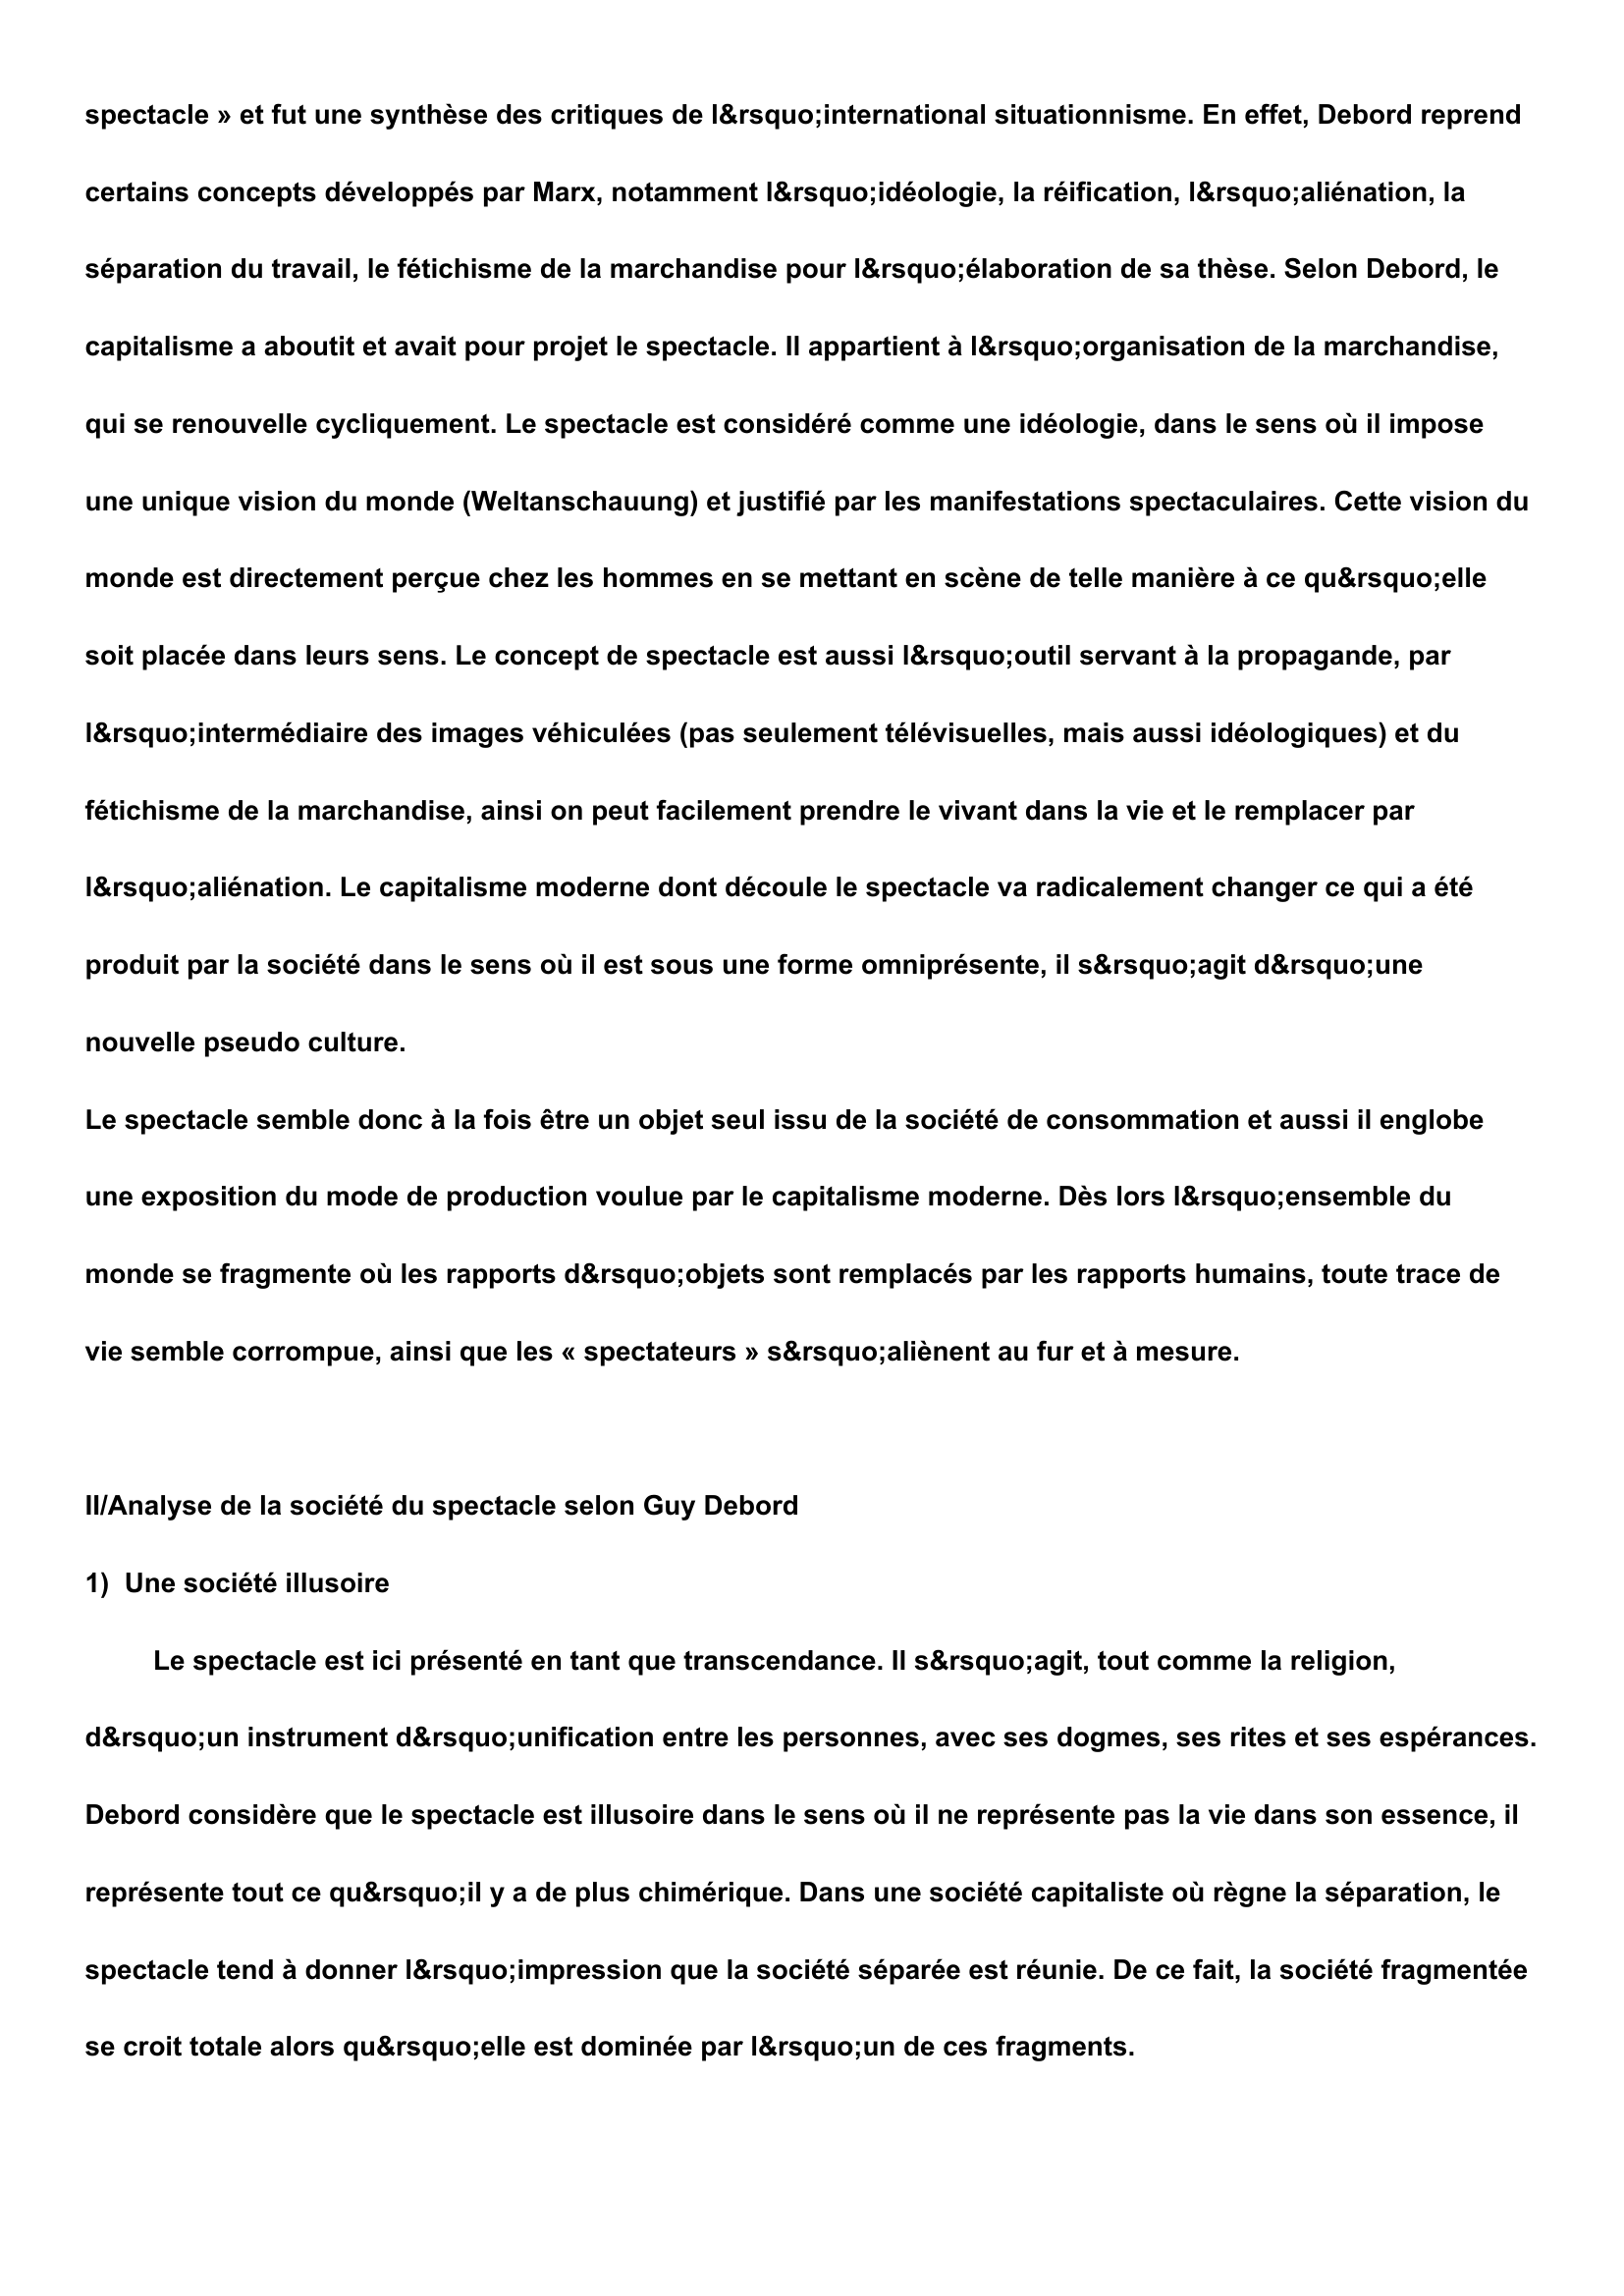 Prévisualisation du document La société du spectacle de Guy DEBORD: les enjeux.